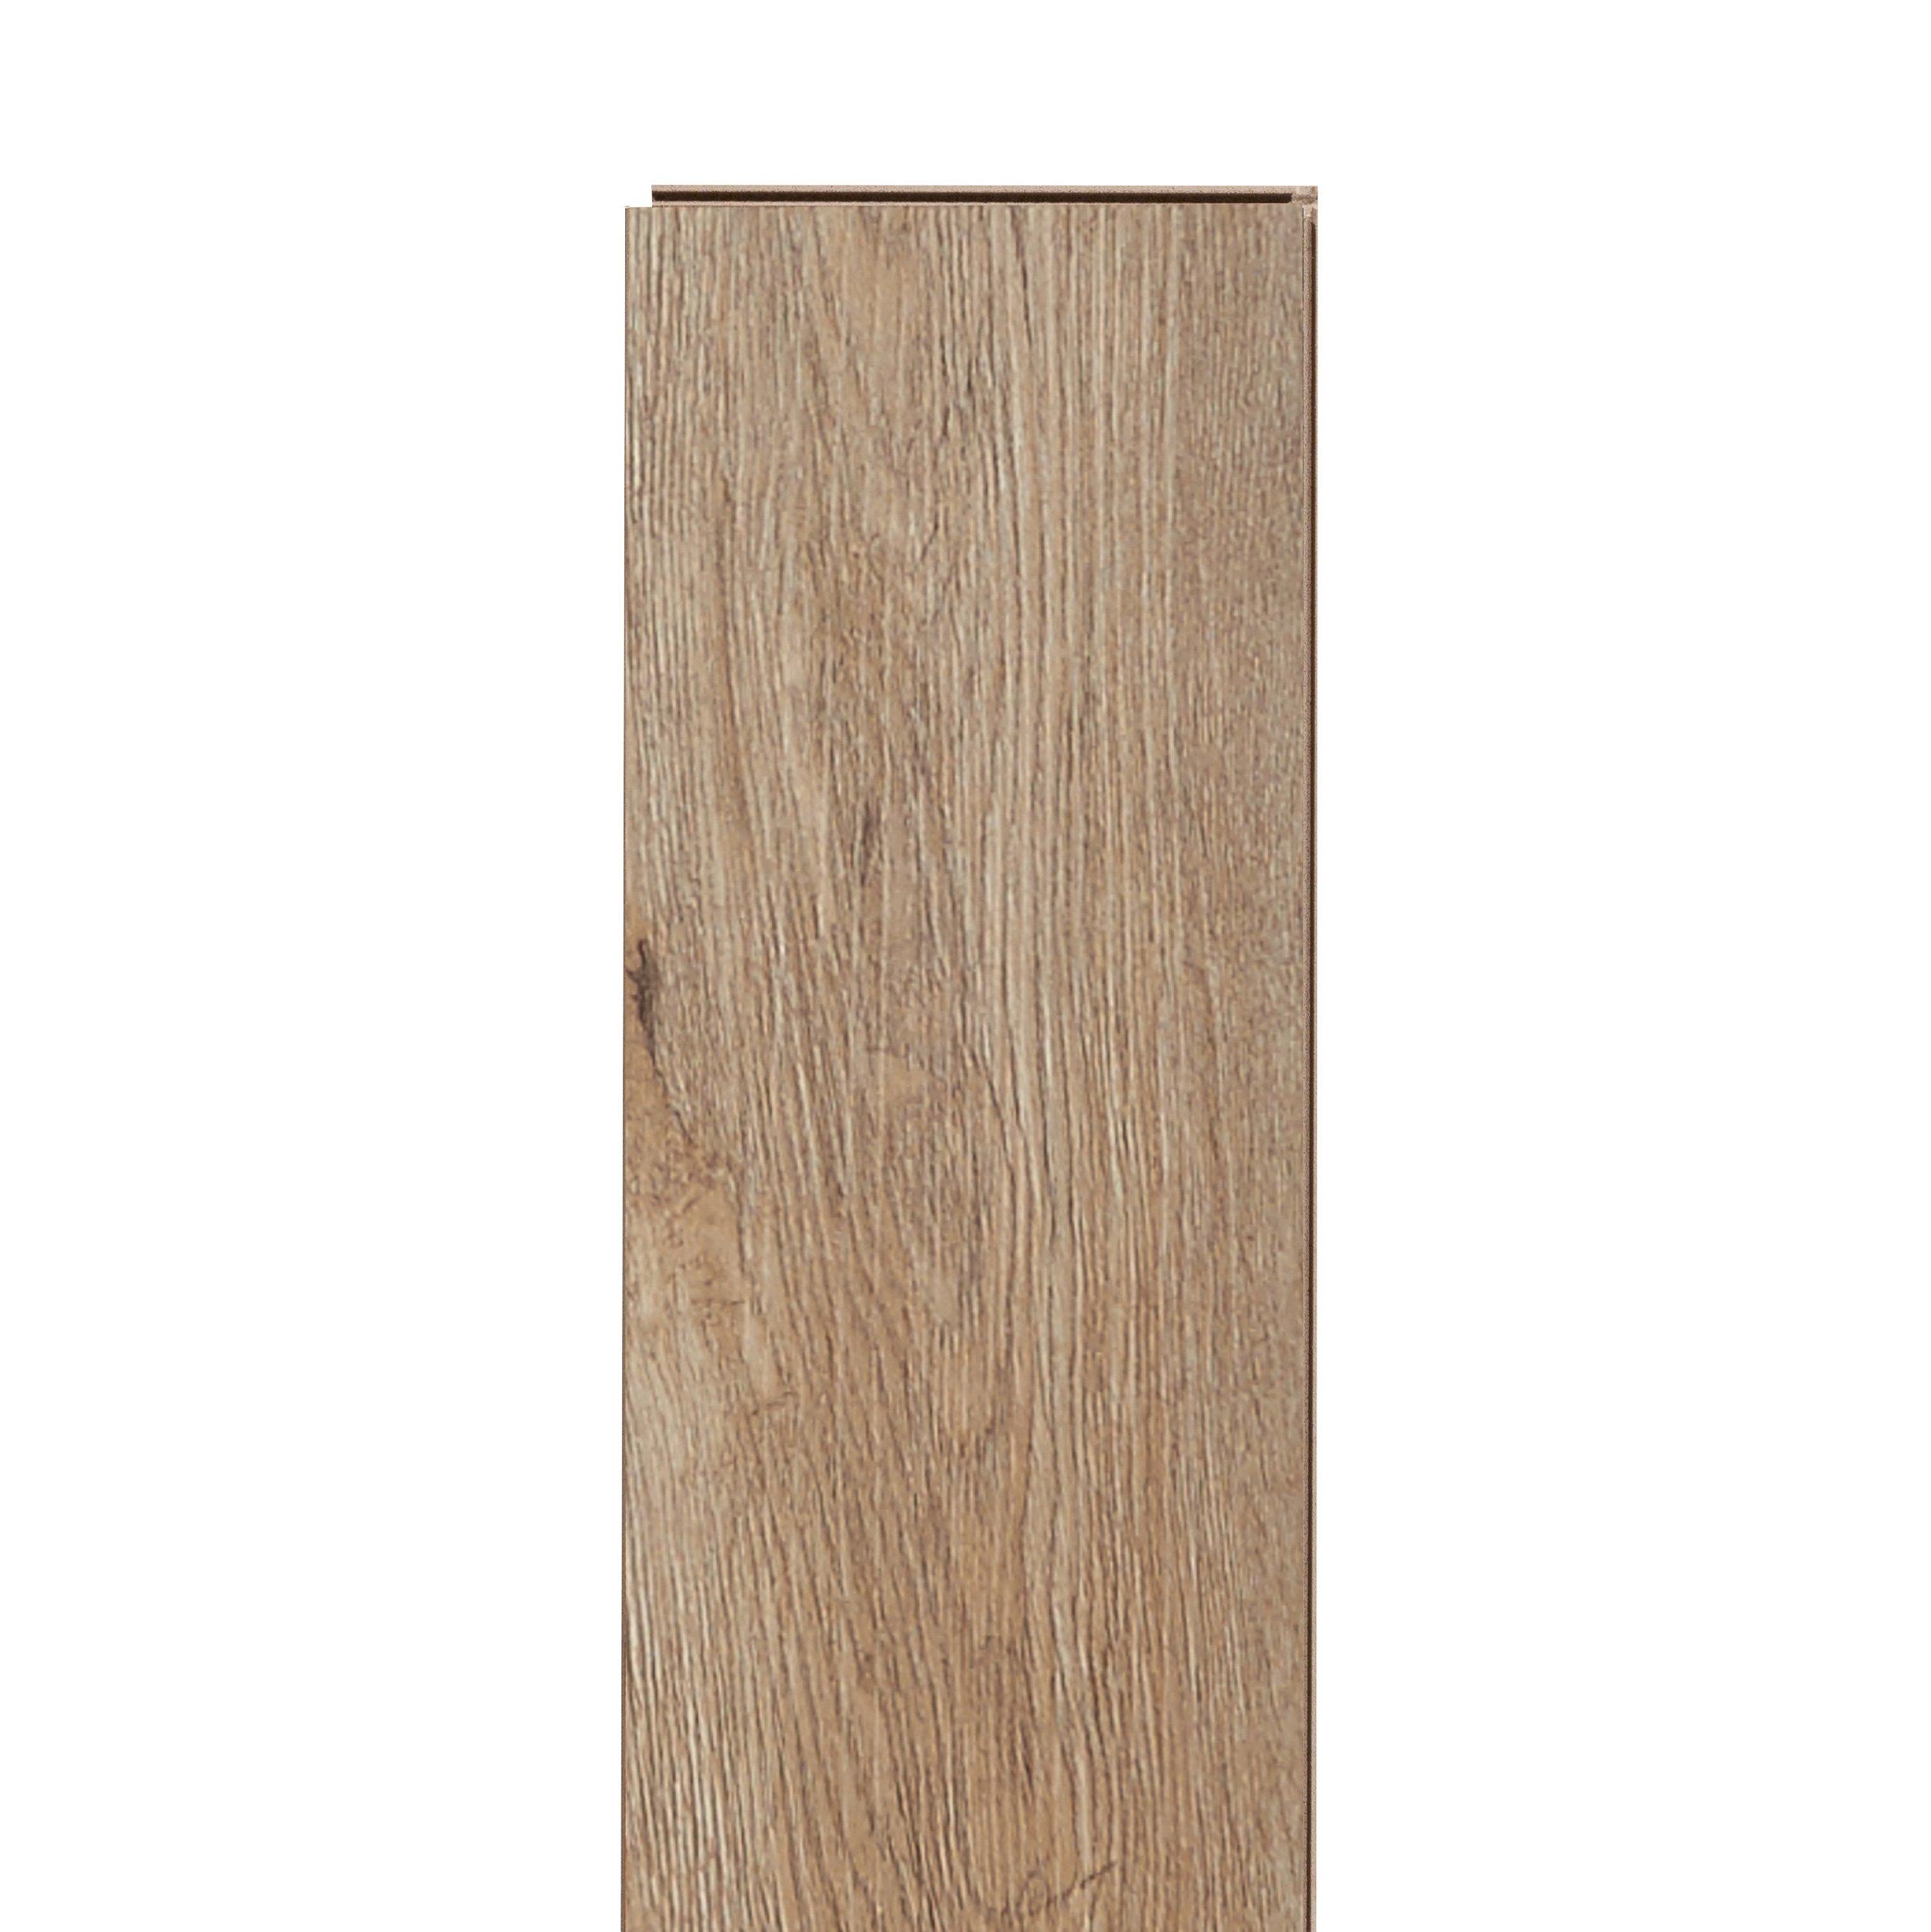 Driftwood Oak Rigid Core Luxury Vinyl Plank - Cork Back